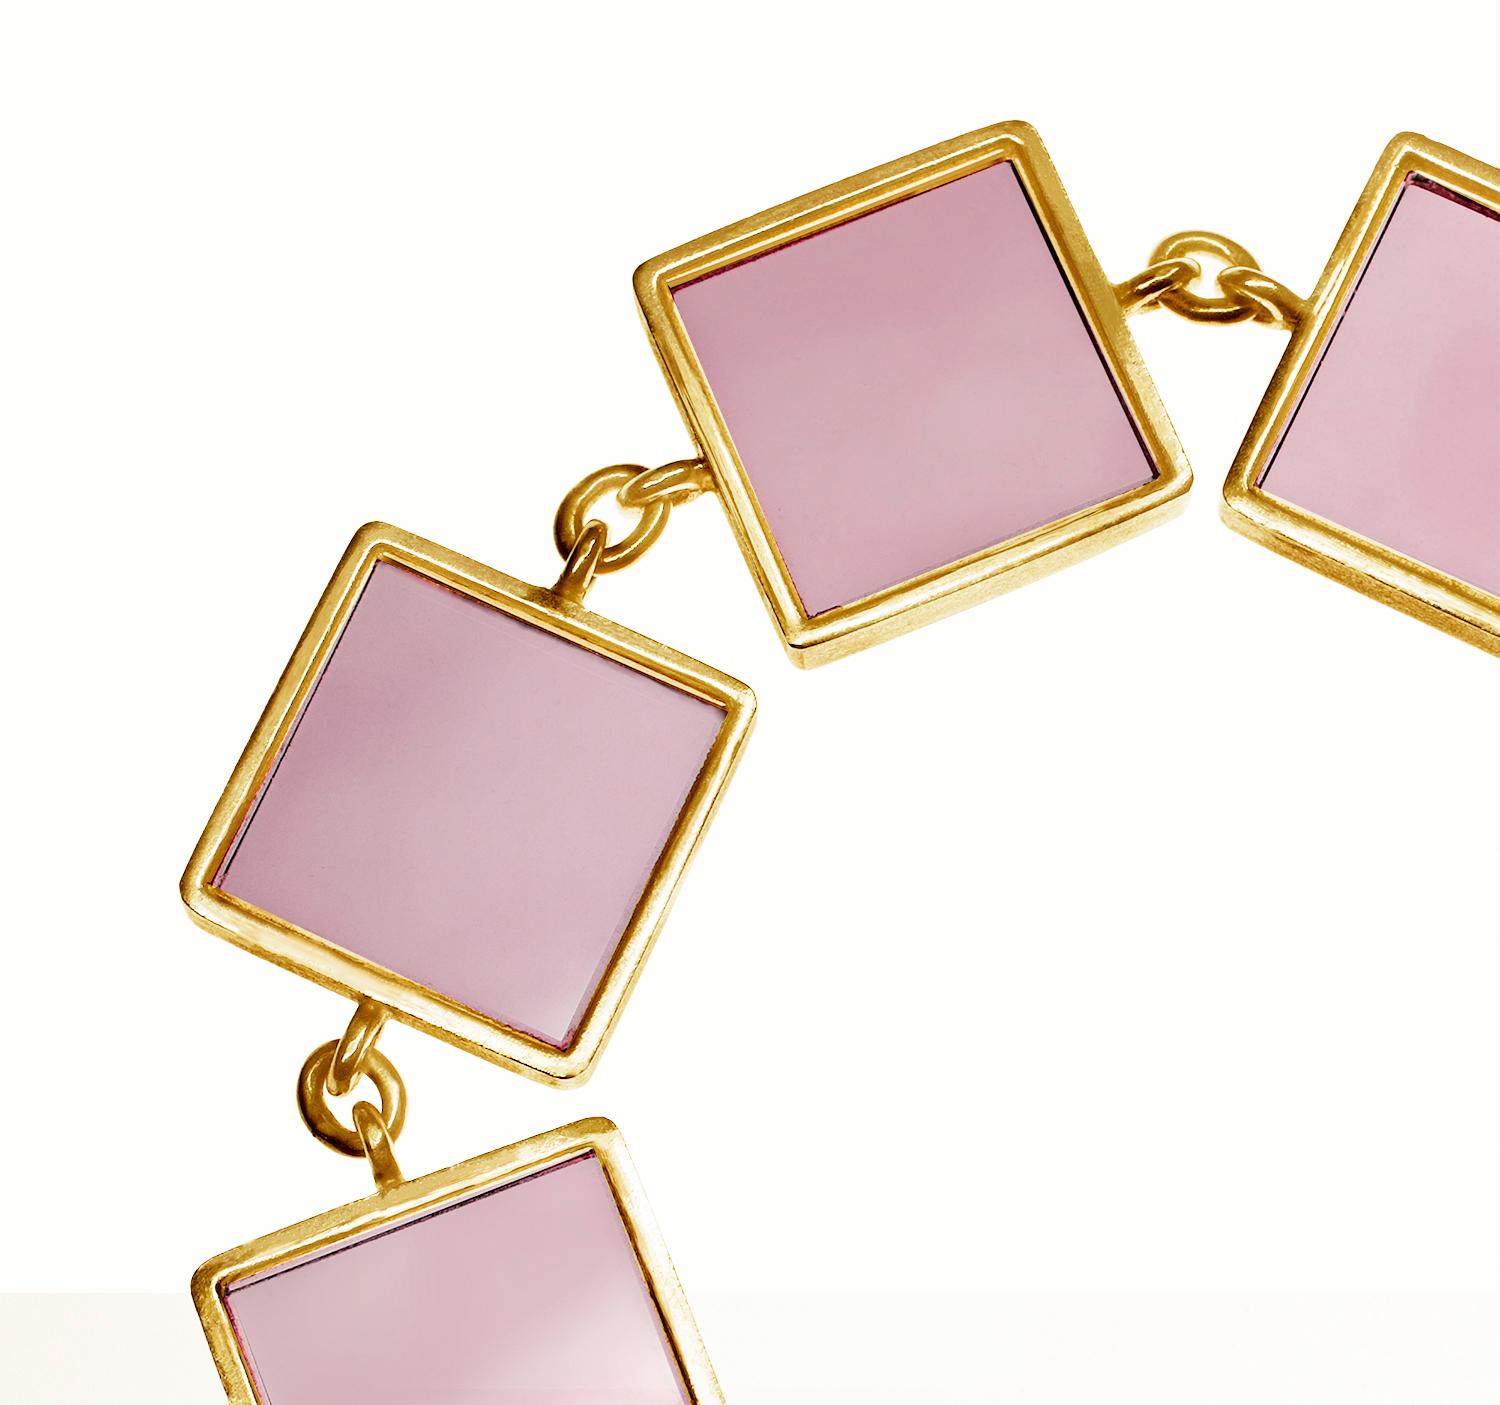 Ce bracelet de créateur est en or rose (ou jaune) 14 carats avec sept onyx roses de 15x15x3 mm. La collection Ink a été présentée dans les numéros publiés par Harper's Bazaar UA et Vogue UA.

Le bracelet brille doucement grâce à l'or et au quartz